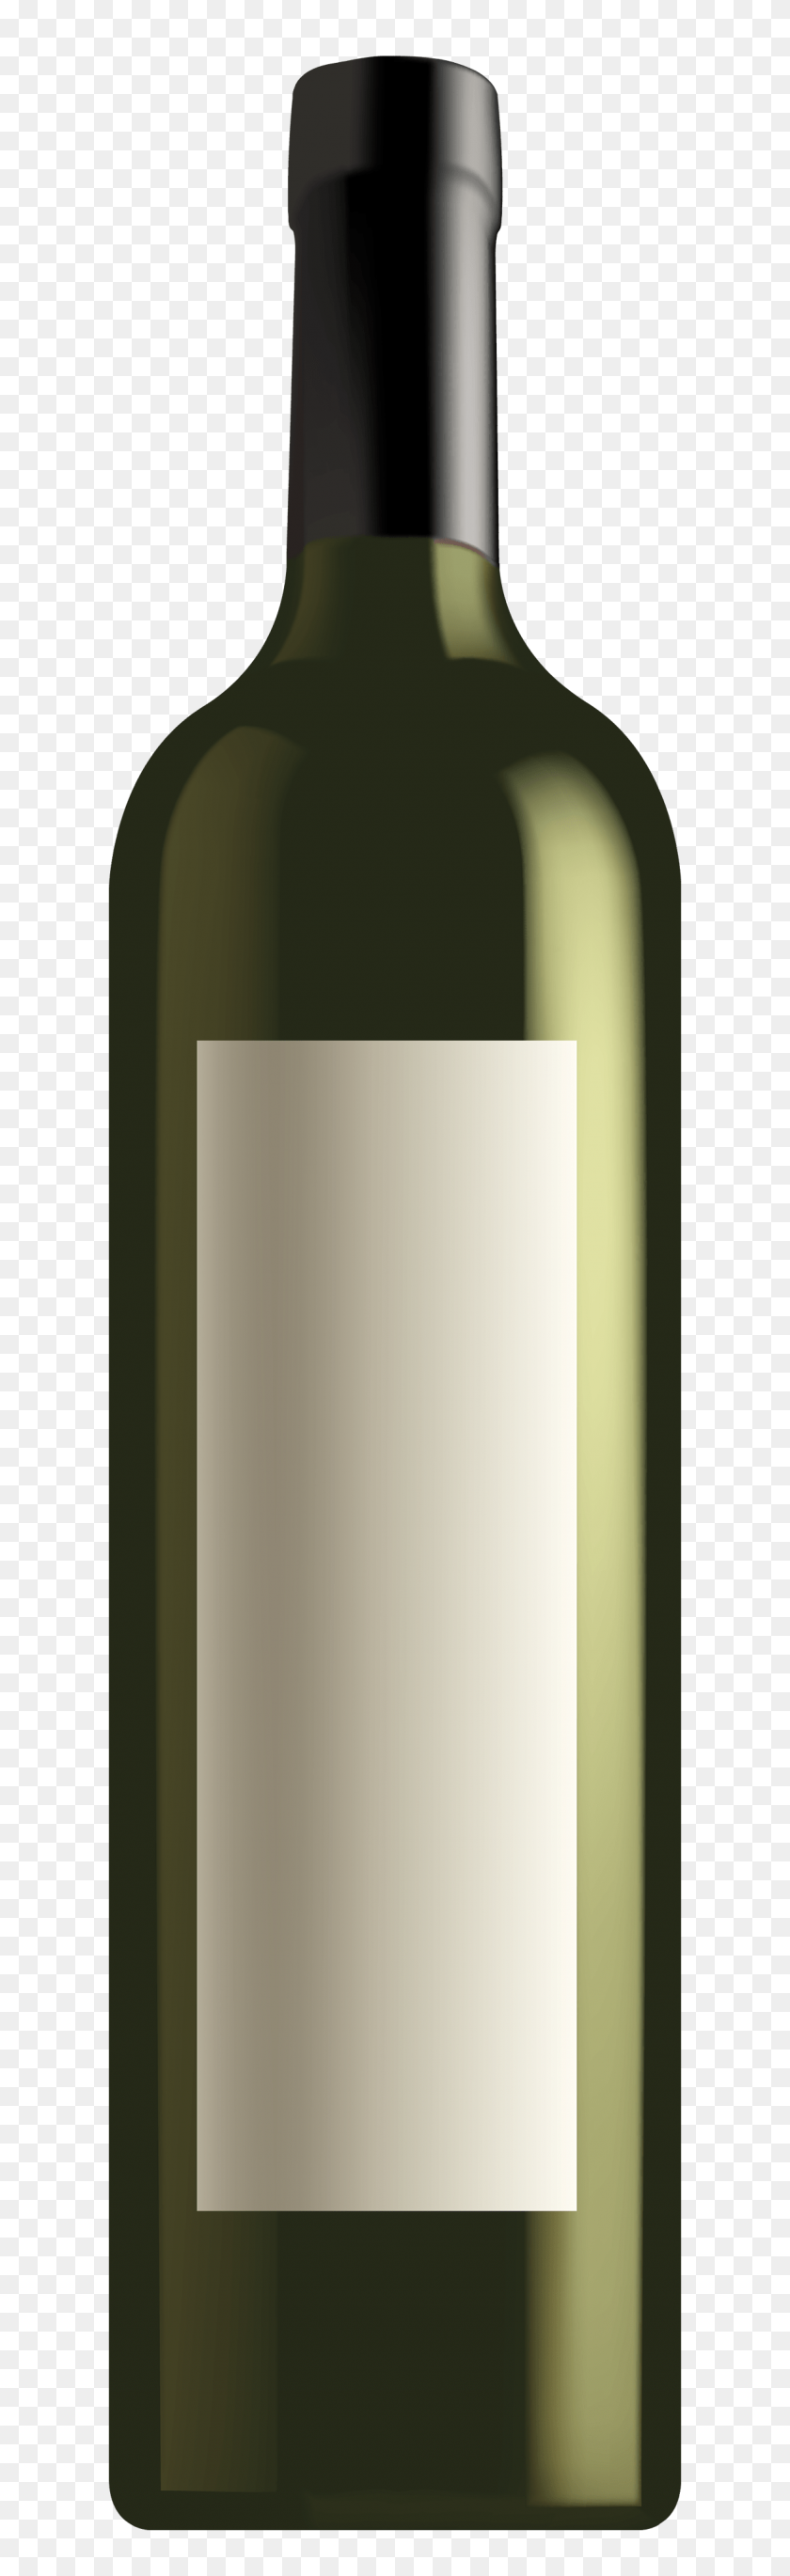 1164x4000 Cliparts De Cesta De Vino - Clipart De Botella De Vino Blanco Y Negro